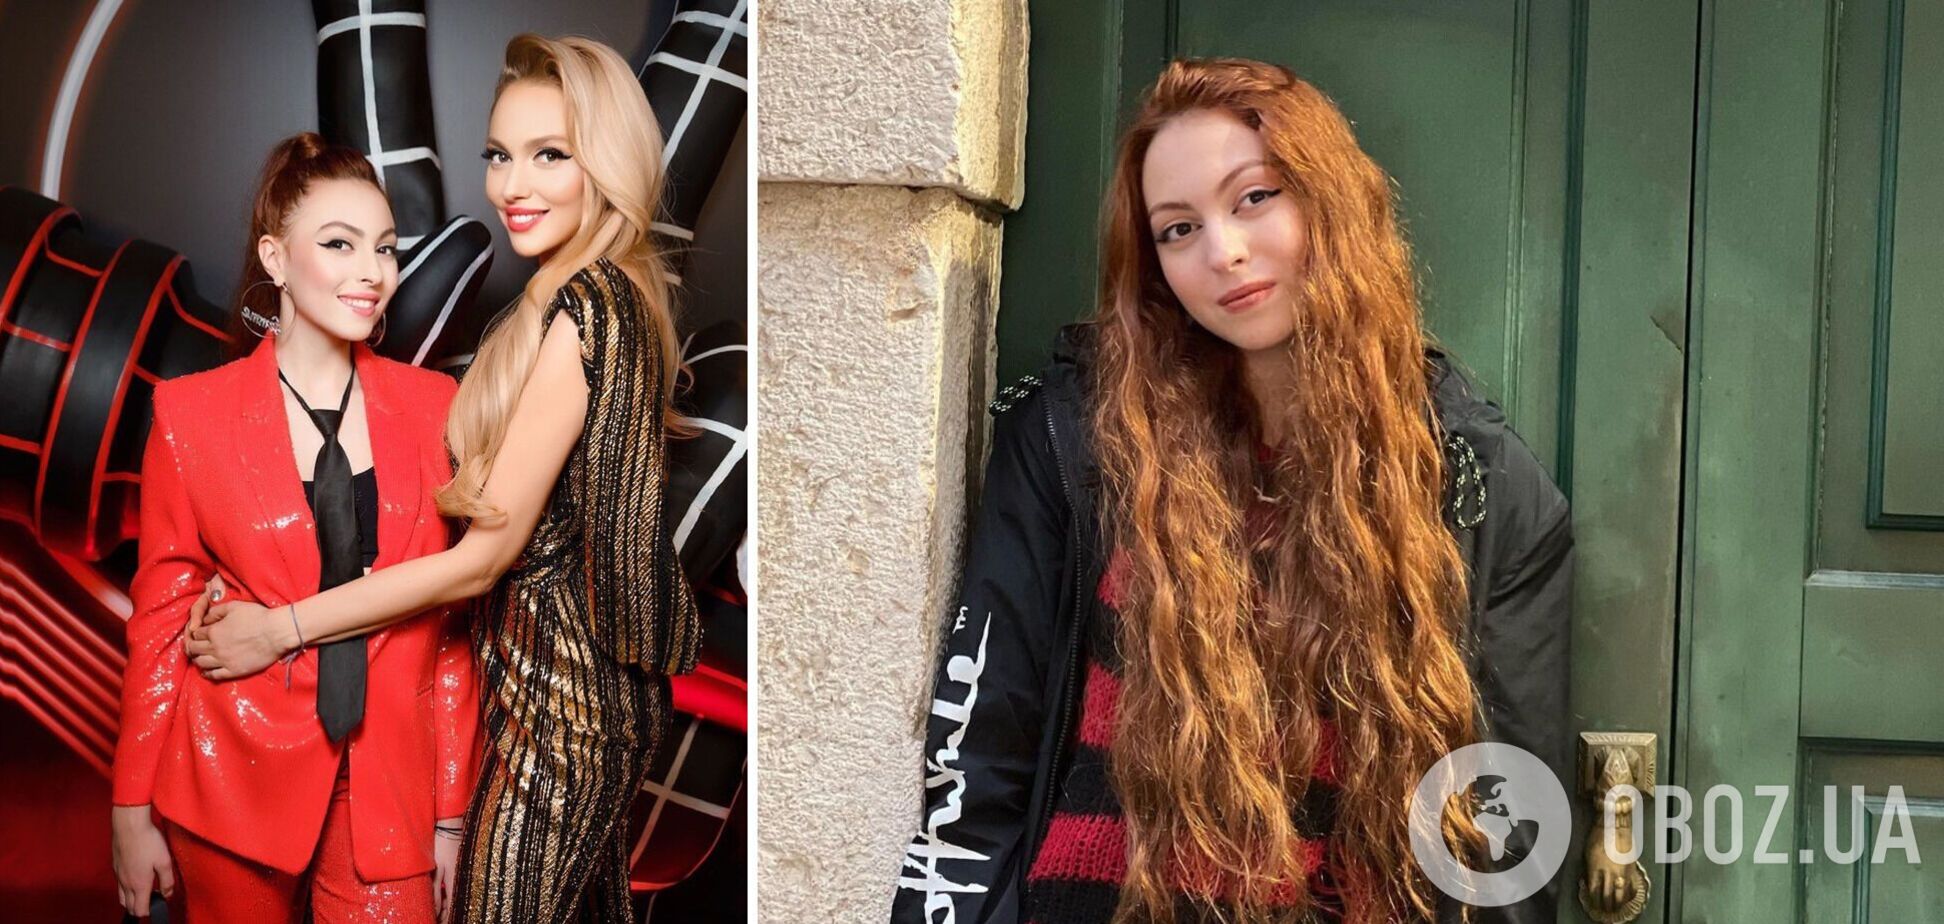 17-летняя дочь Поляковой анонсировала свою первую песню на украинском: о лесбийской любви